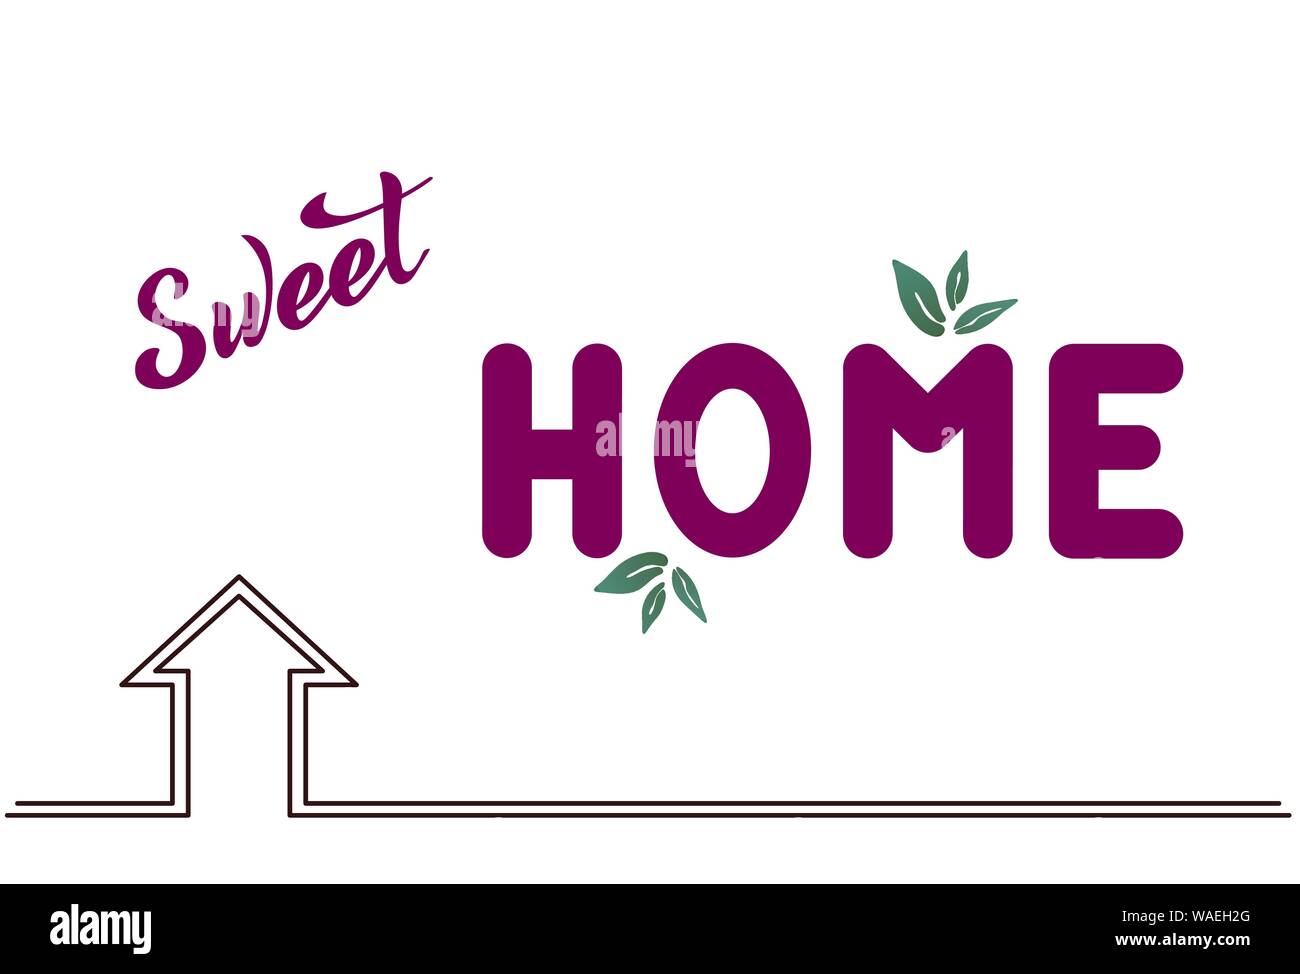 Illustrazione Vettoriale con scritte a mano - Sweet Home. Lilla il testo su sfondo bianco. Per il sito web, cafe, shop, interior design, vestiti, borsa. Illustrazione Vettoriale